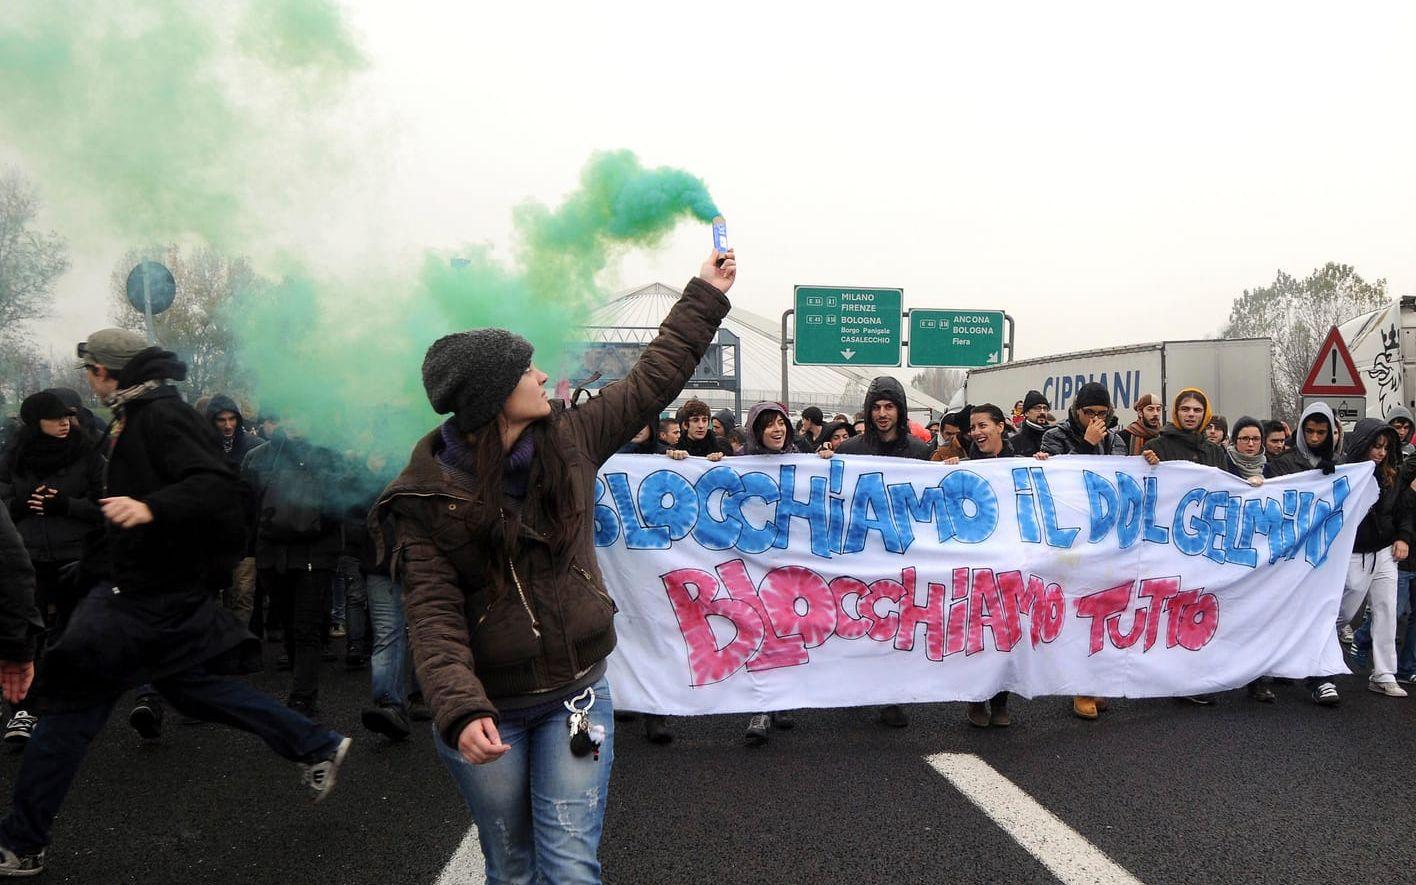 Bologna är vida känt för dess universitet, här en studentprotest.